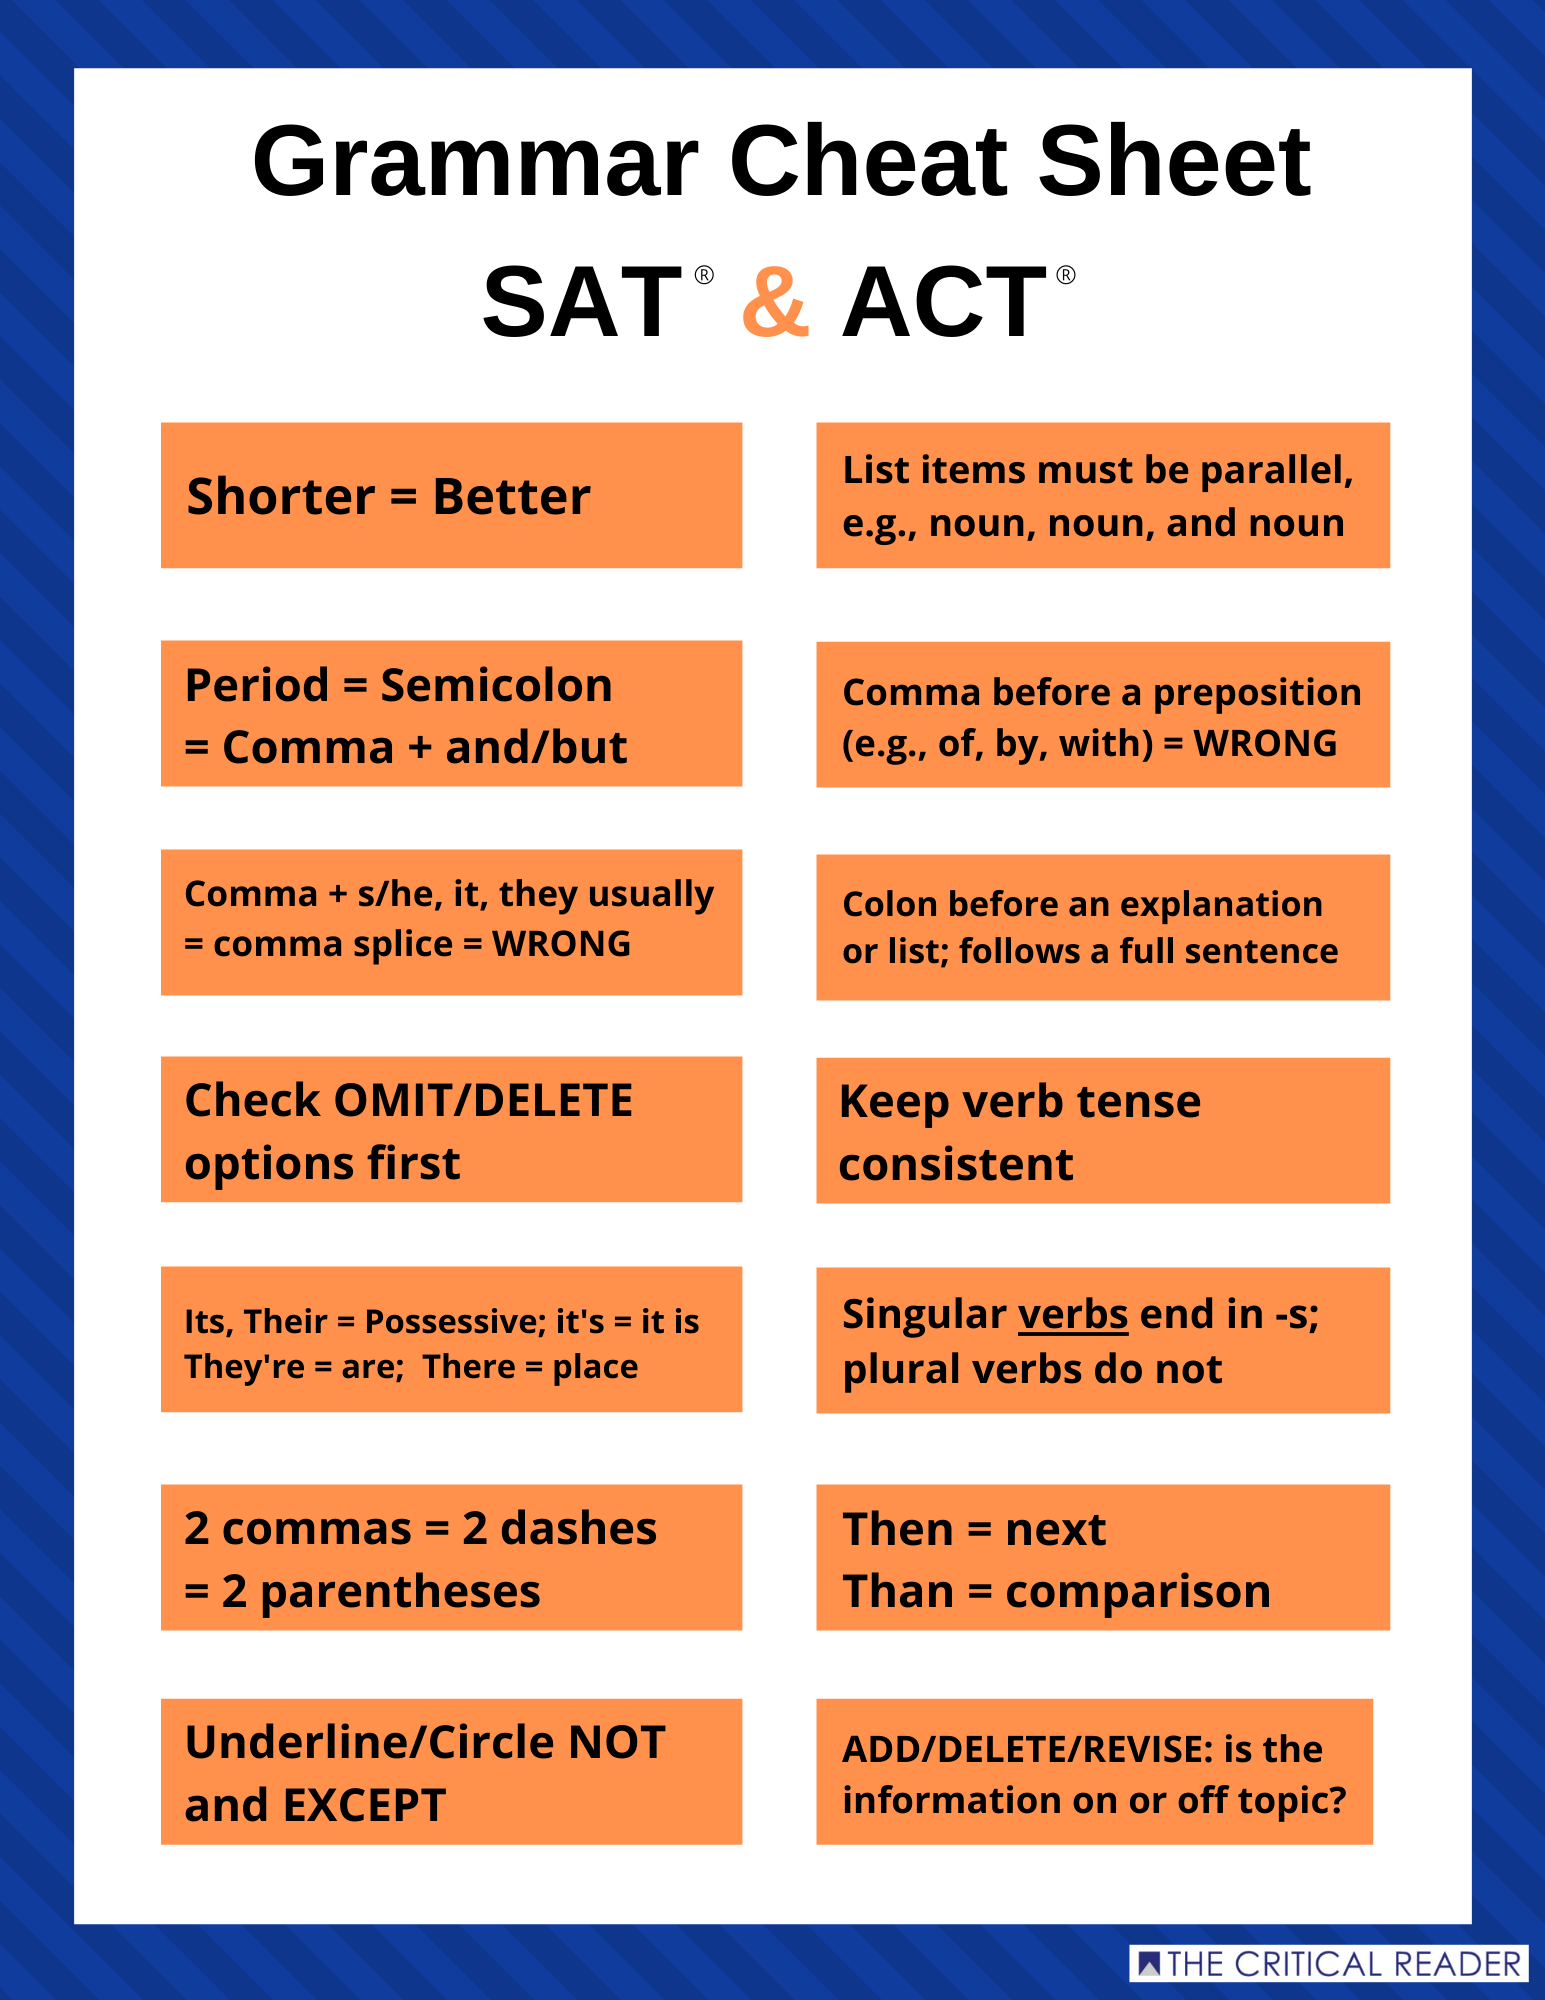 sat-grammar-cheat-sheet-pdf-cheat-sheet-vrogue